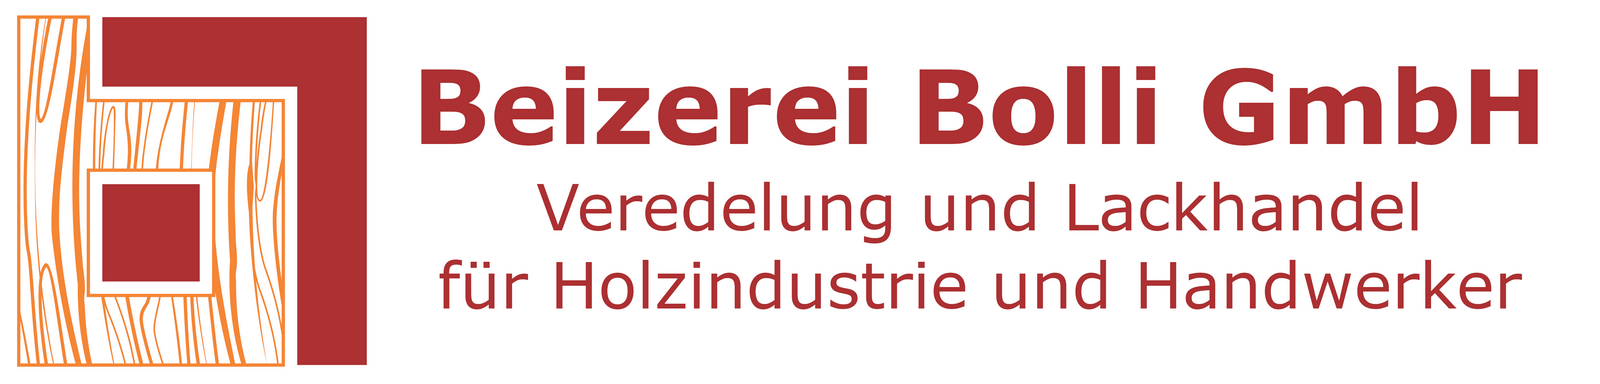 Beizerei Bolli GmbH